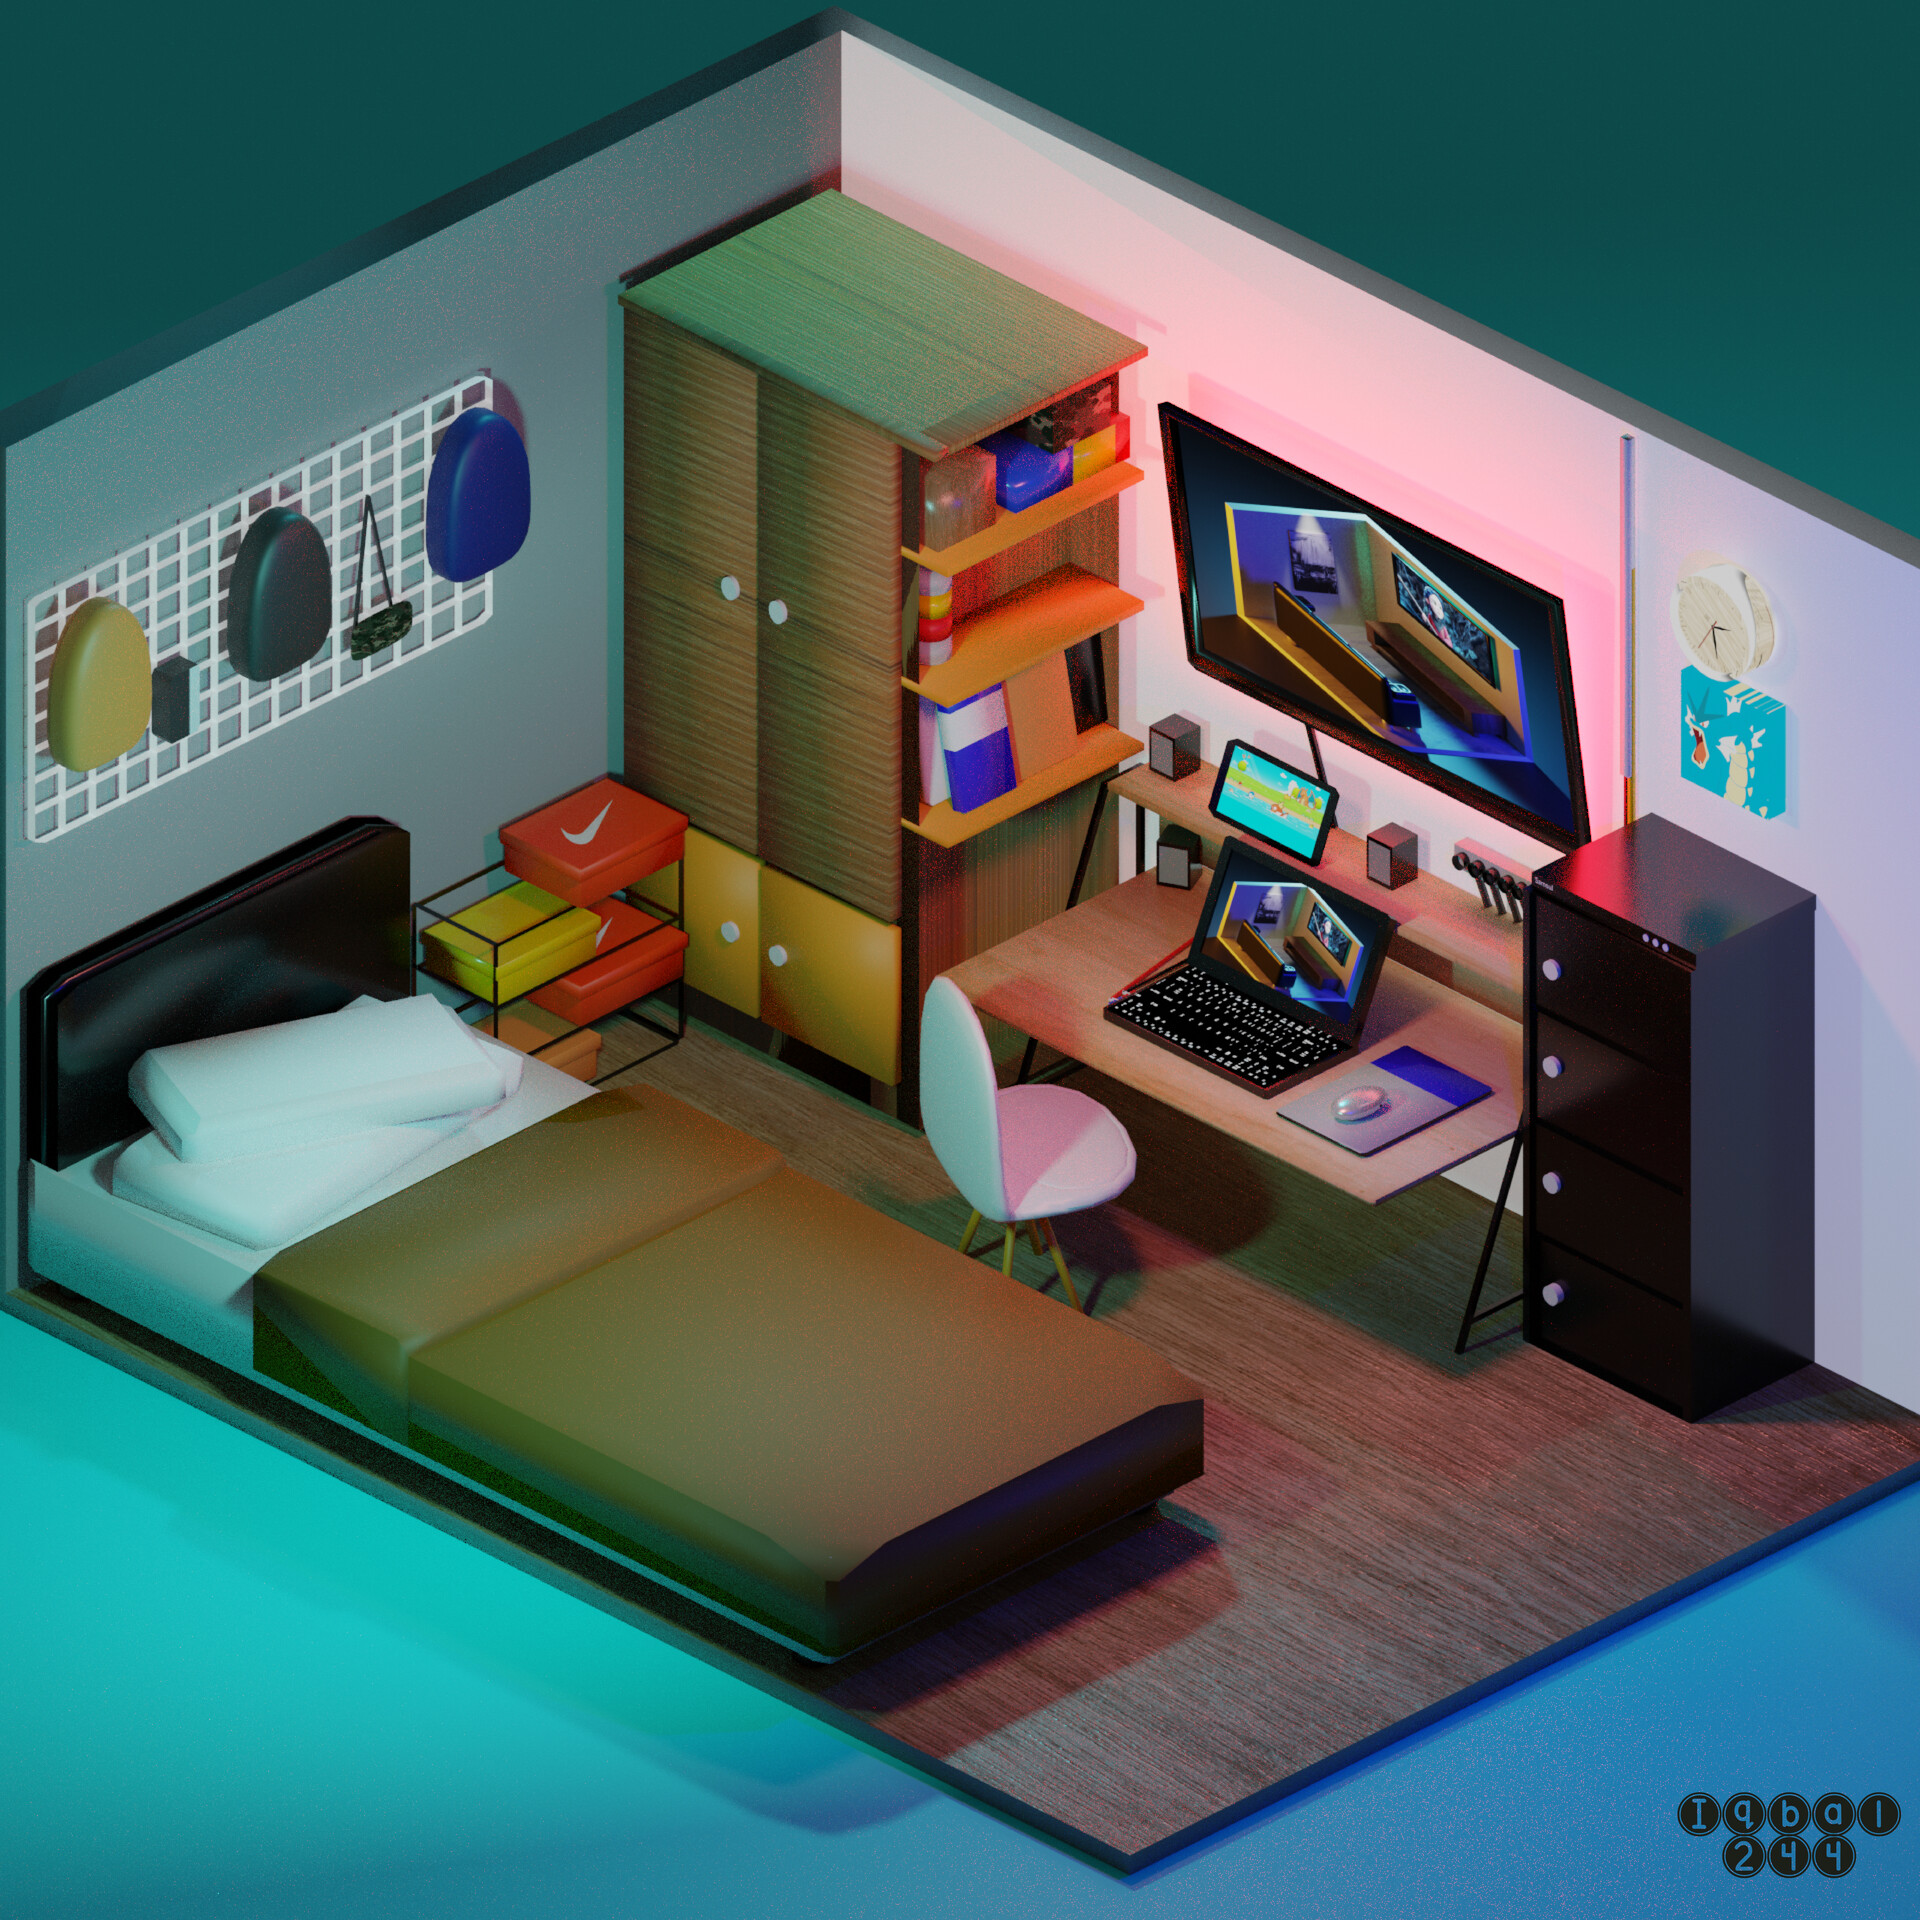 ArtStation - My real bedroom's design